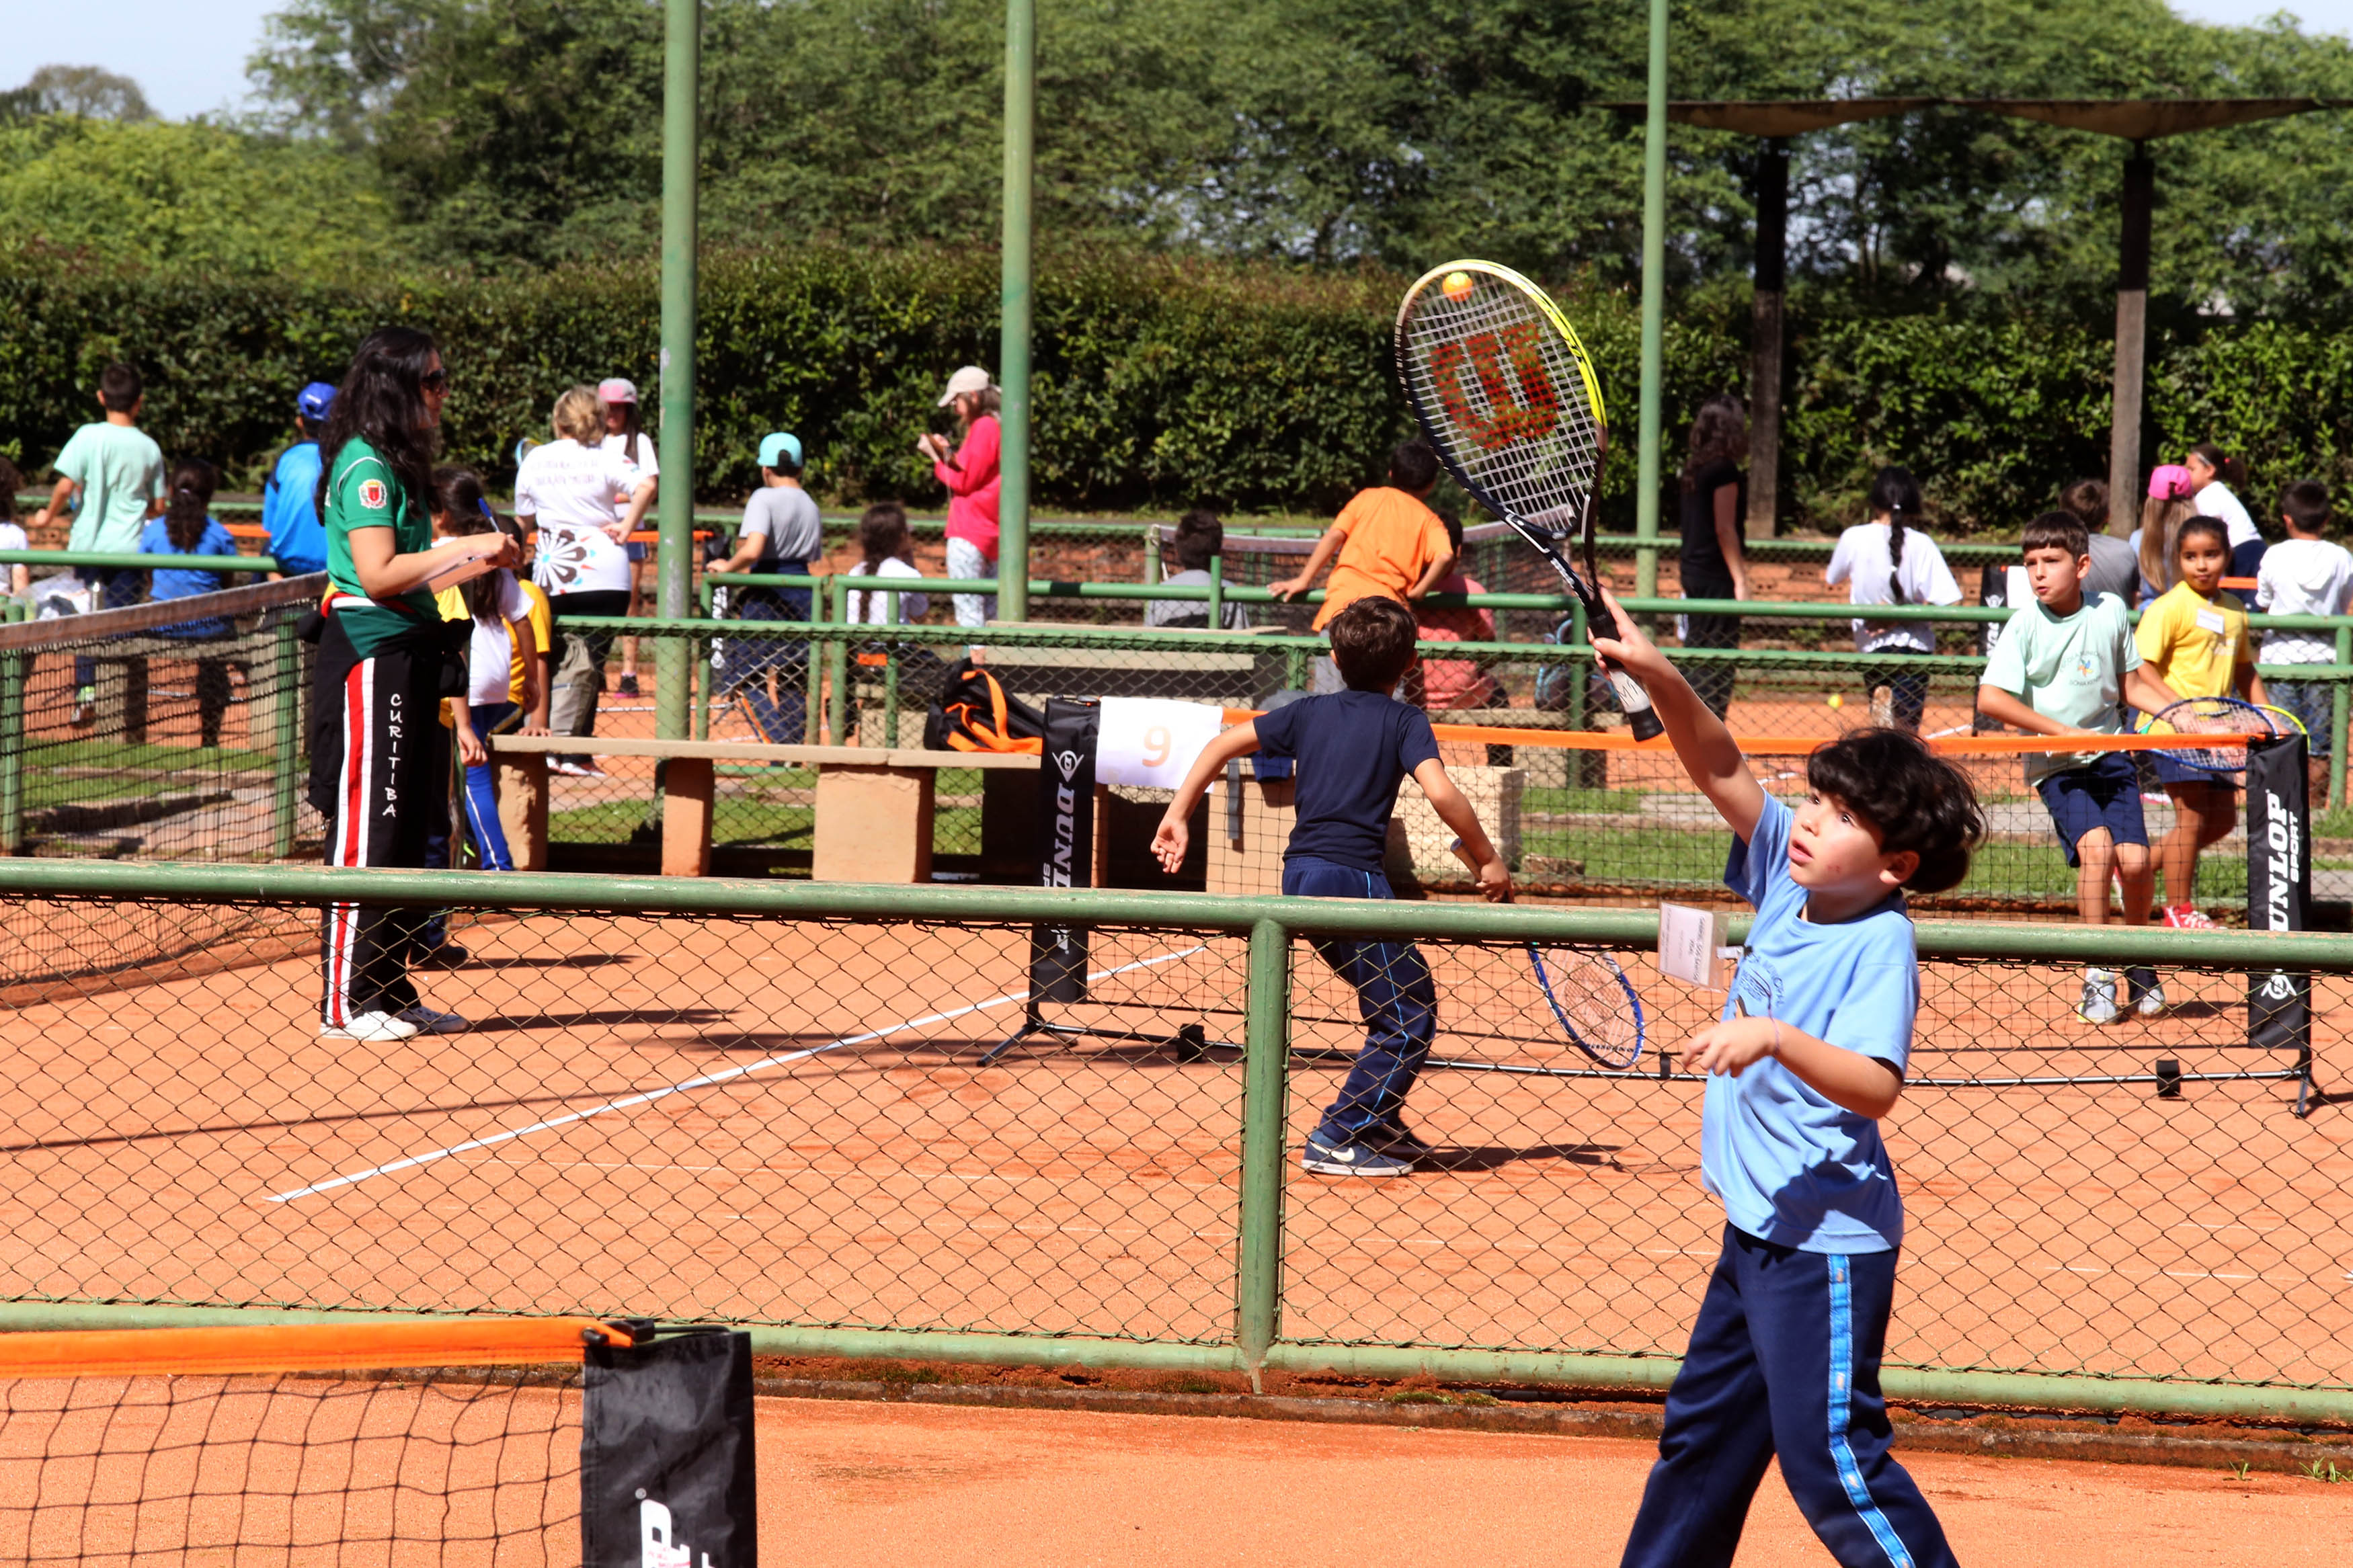 Festival de Tênis acontecerá ainda neste mês, Secretaria Municipal de  Esportes e Lazer